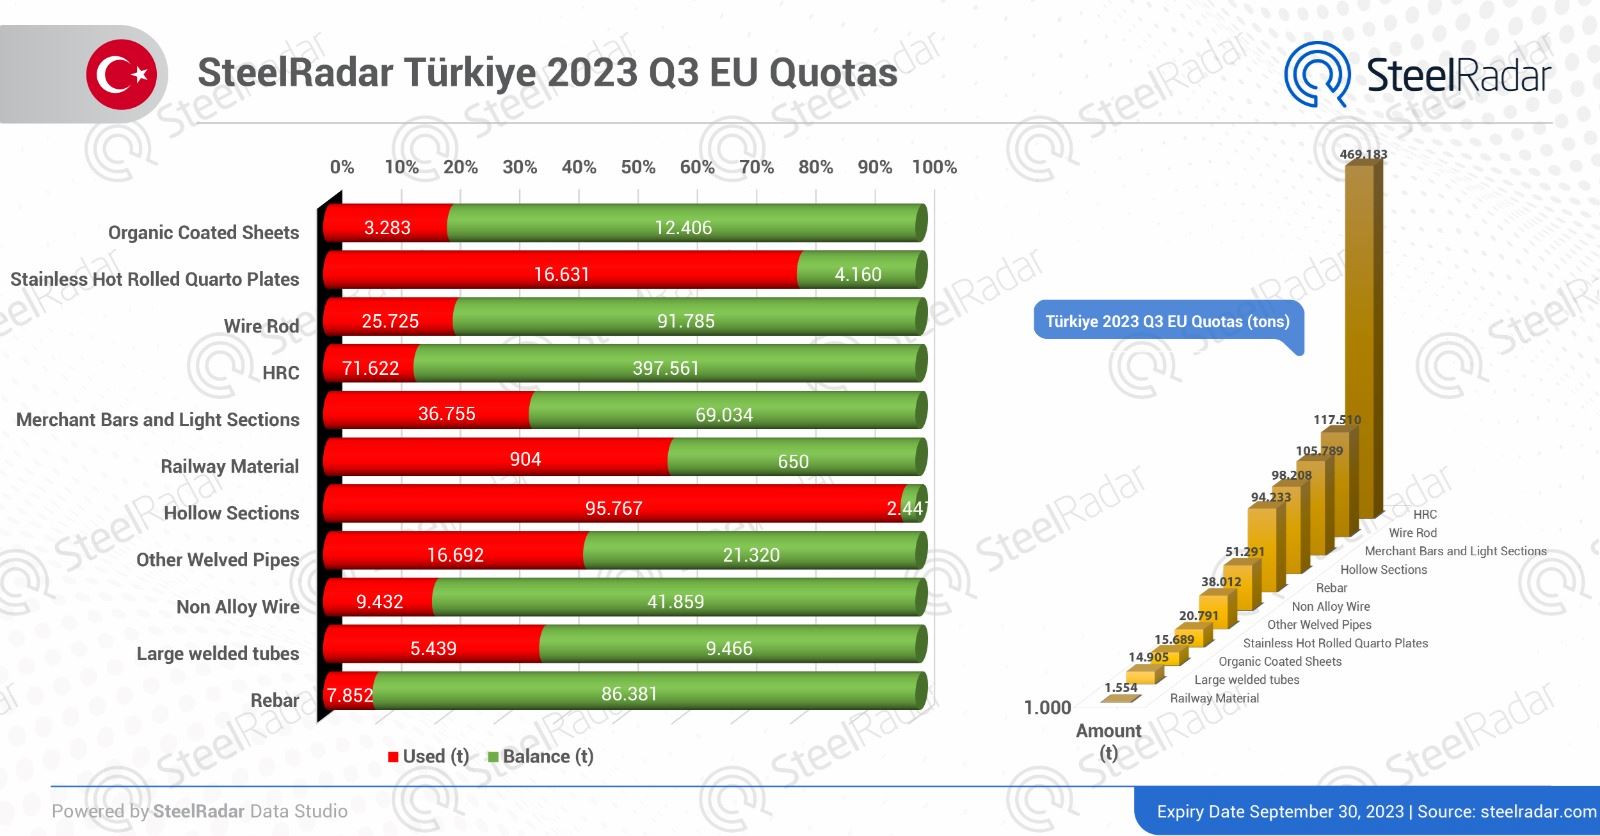 Demand improves for Turkish market in 2023 EU steel quotas